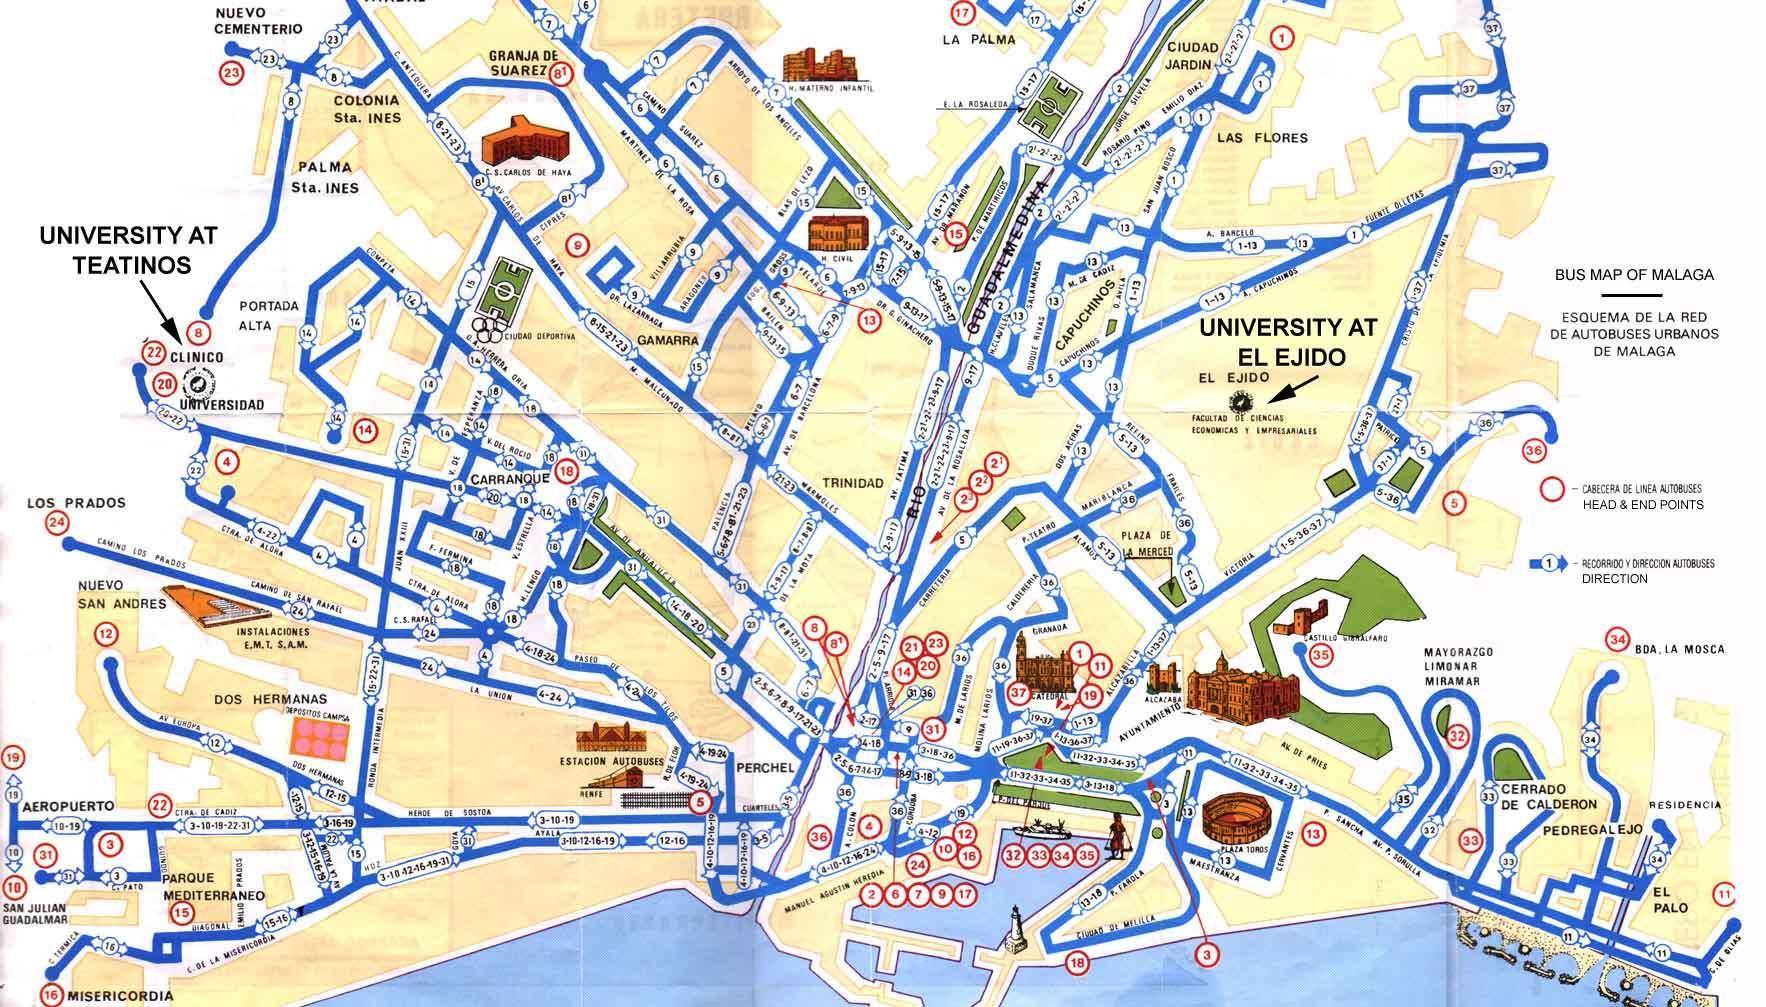 Mappa di Malaga - Cartina di Malaga